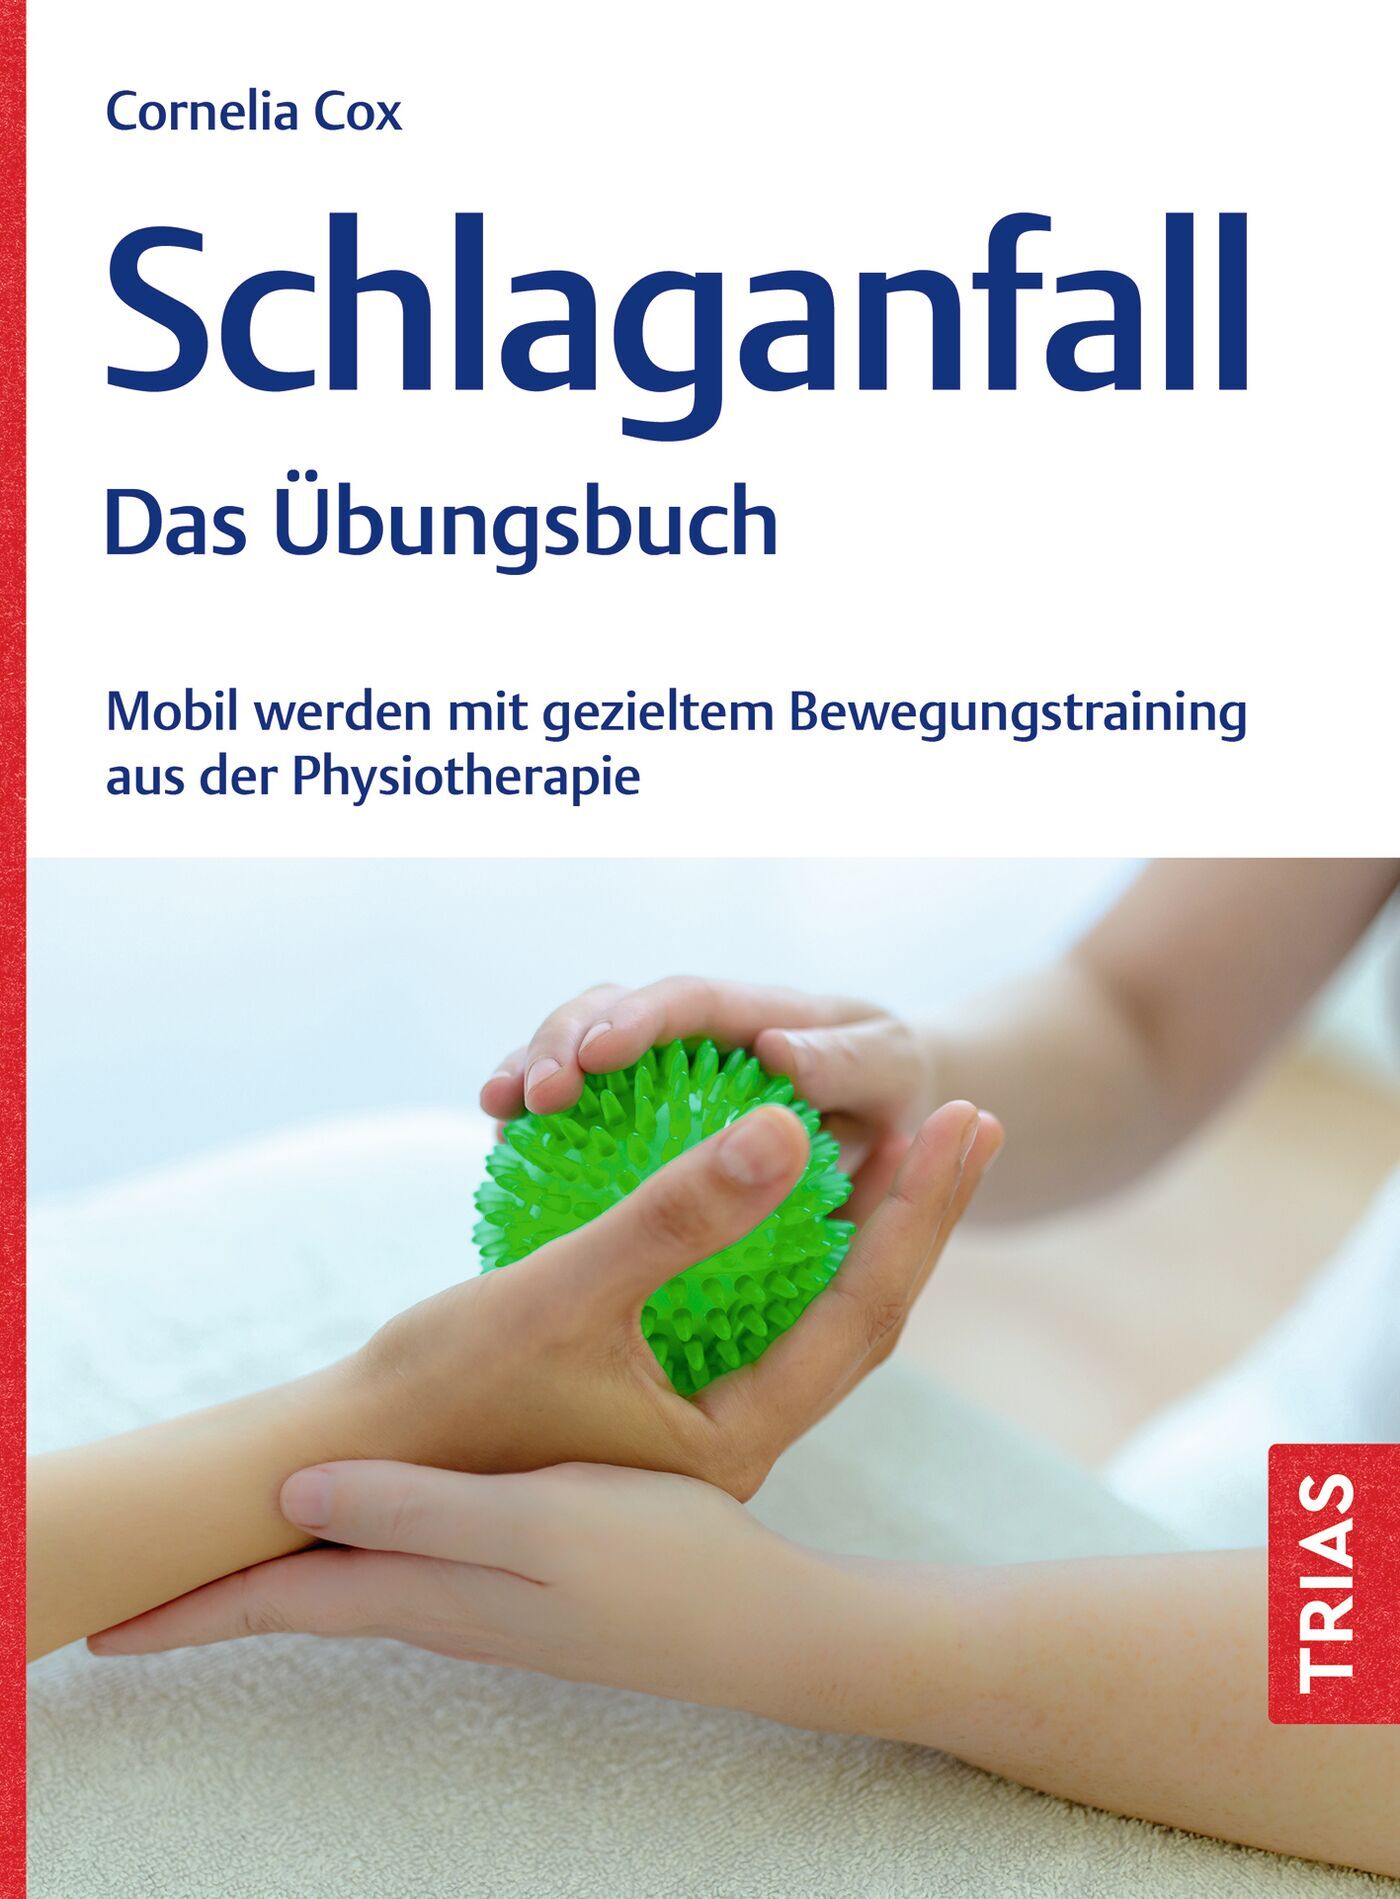 Schlaganfall - Das Übungsbuch, 9783432118215